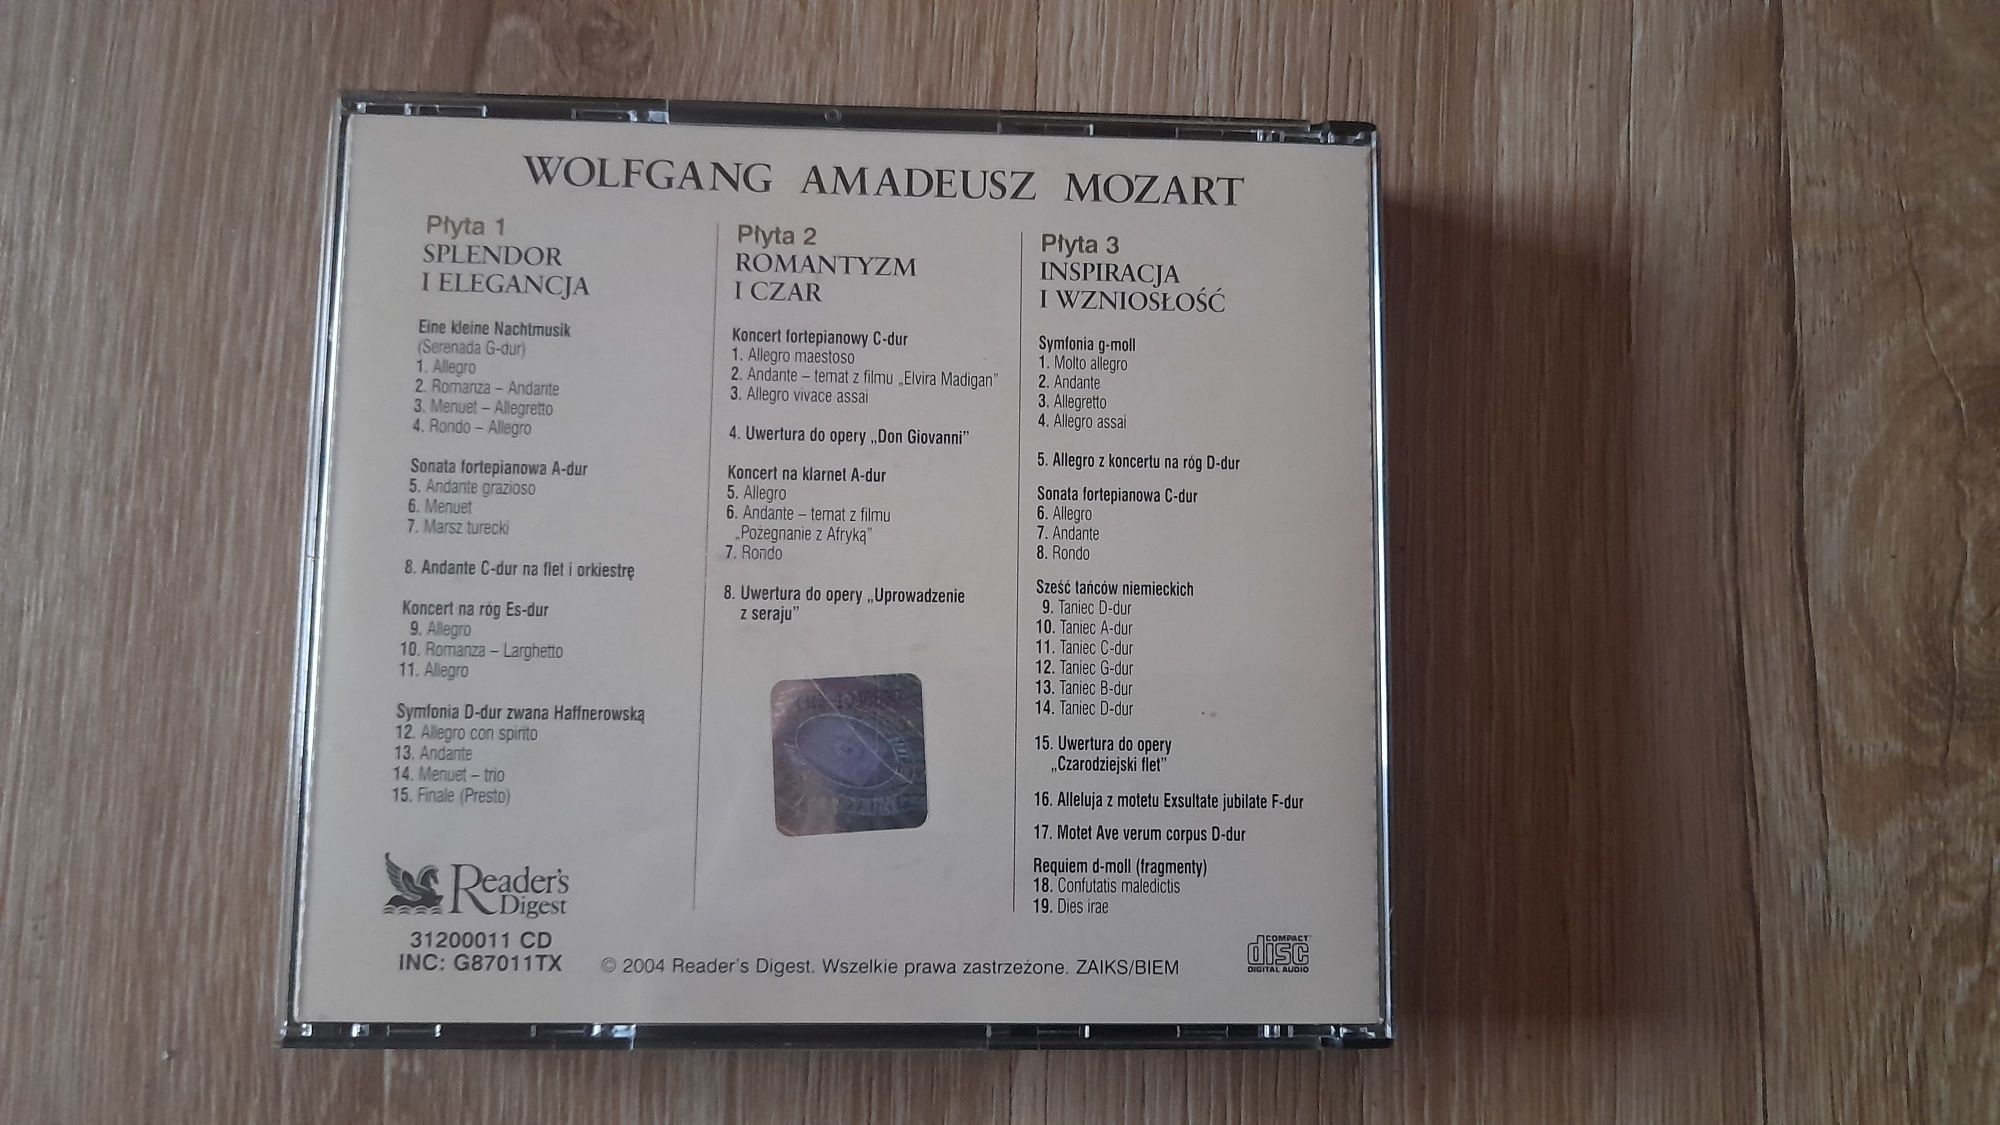 Wolfgang Amadeusz Mozart - Perły Muzyki Klasycznej CD